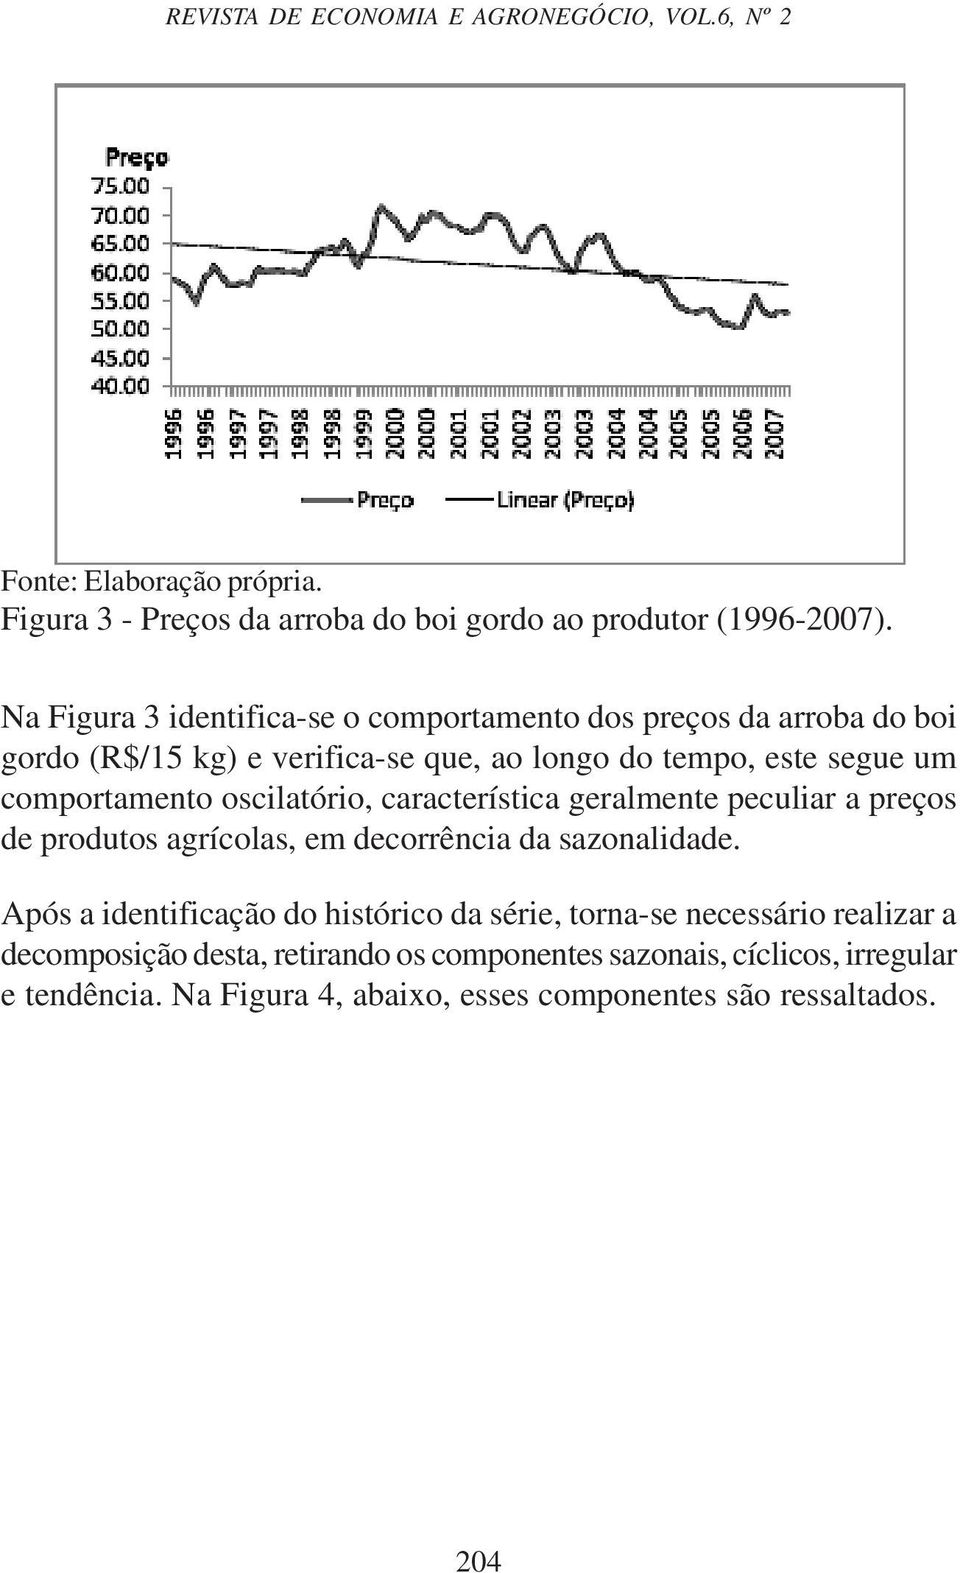 oscilatório, característica geralmente peculiar a preços de produtos agrícolas, em decorrência da sazonalidade.